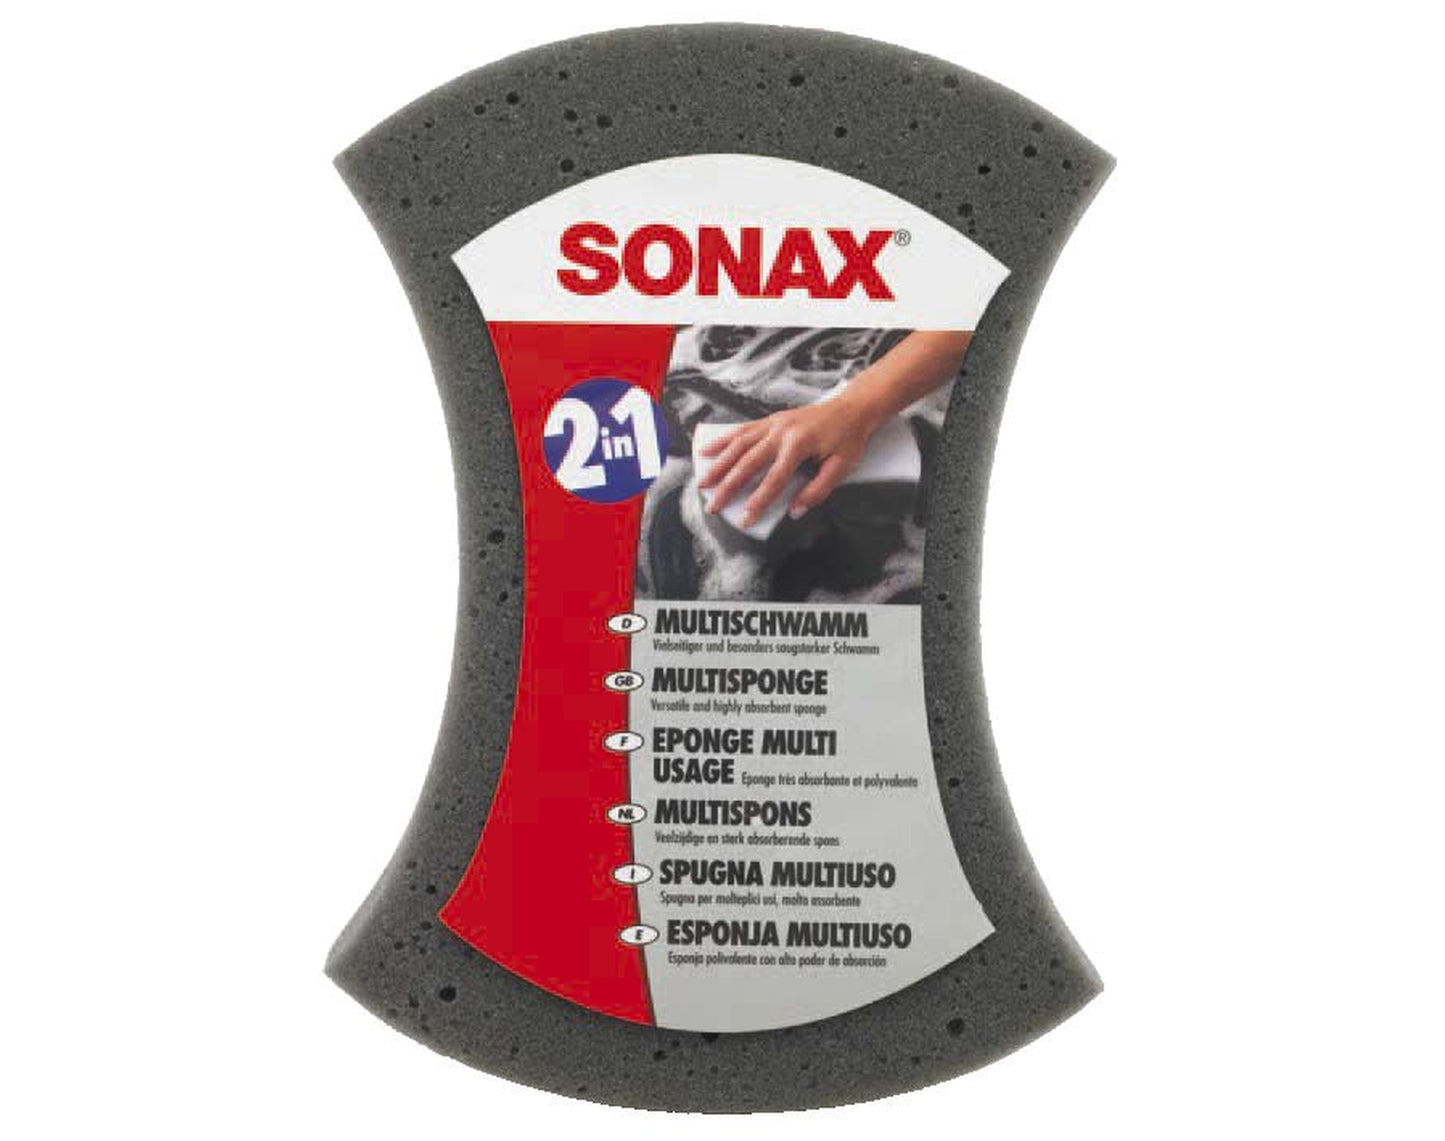 Sonax AutoSchwamm 2in1